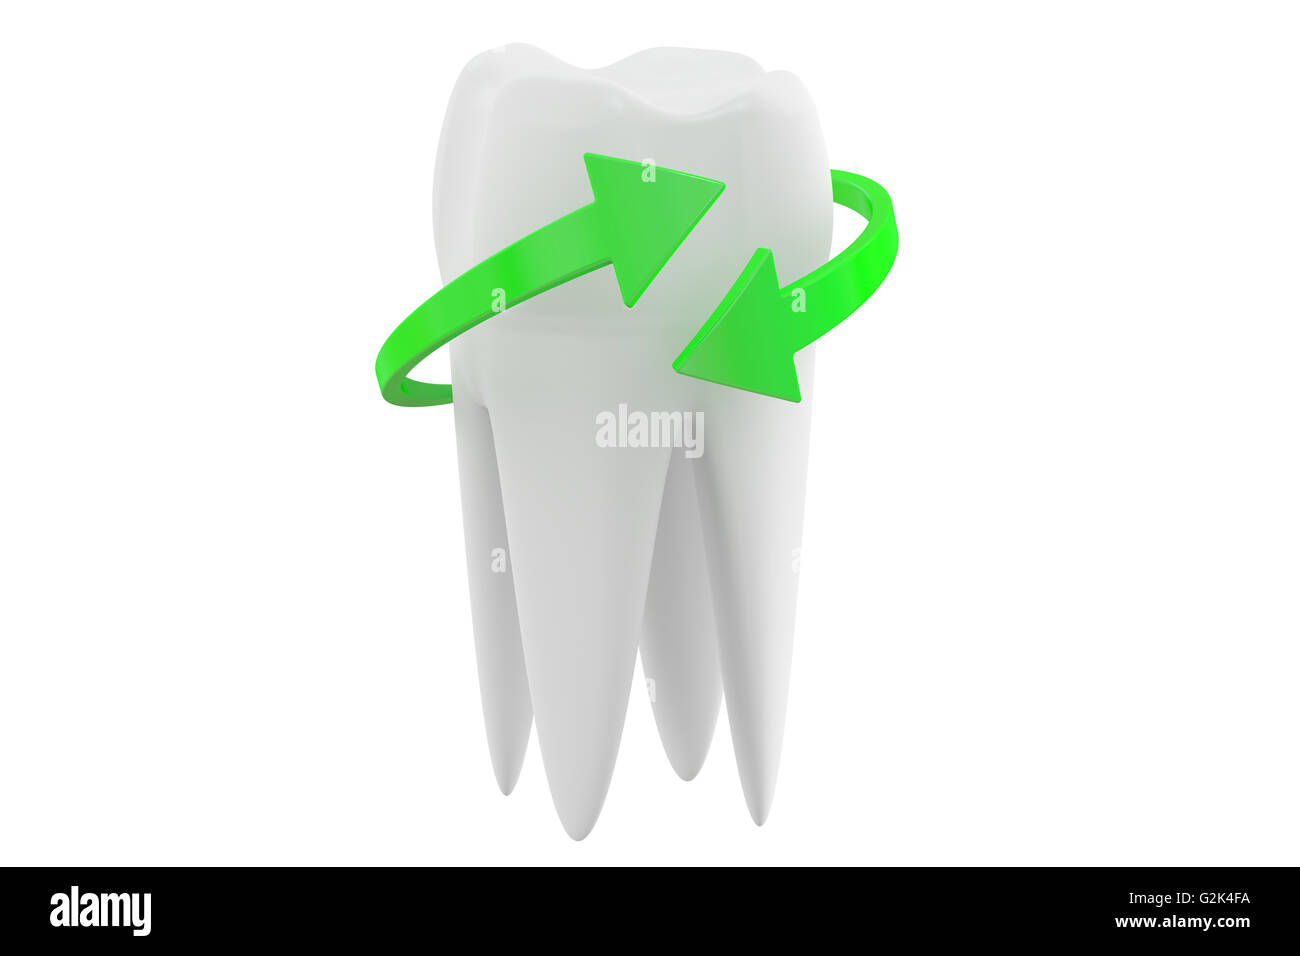 Concept de protection des dents, rendu 3D isolé sur fond blanc Banque D'Images